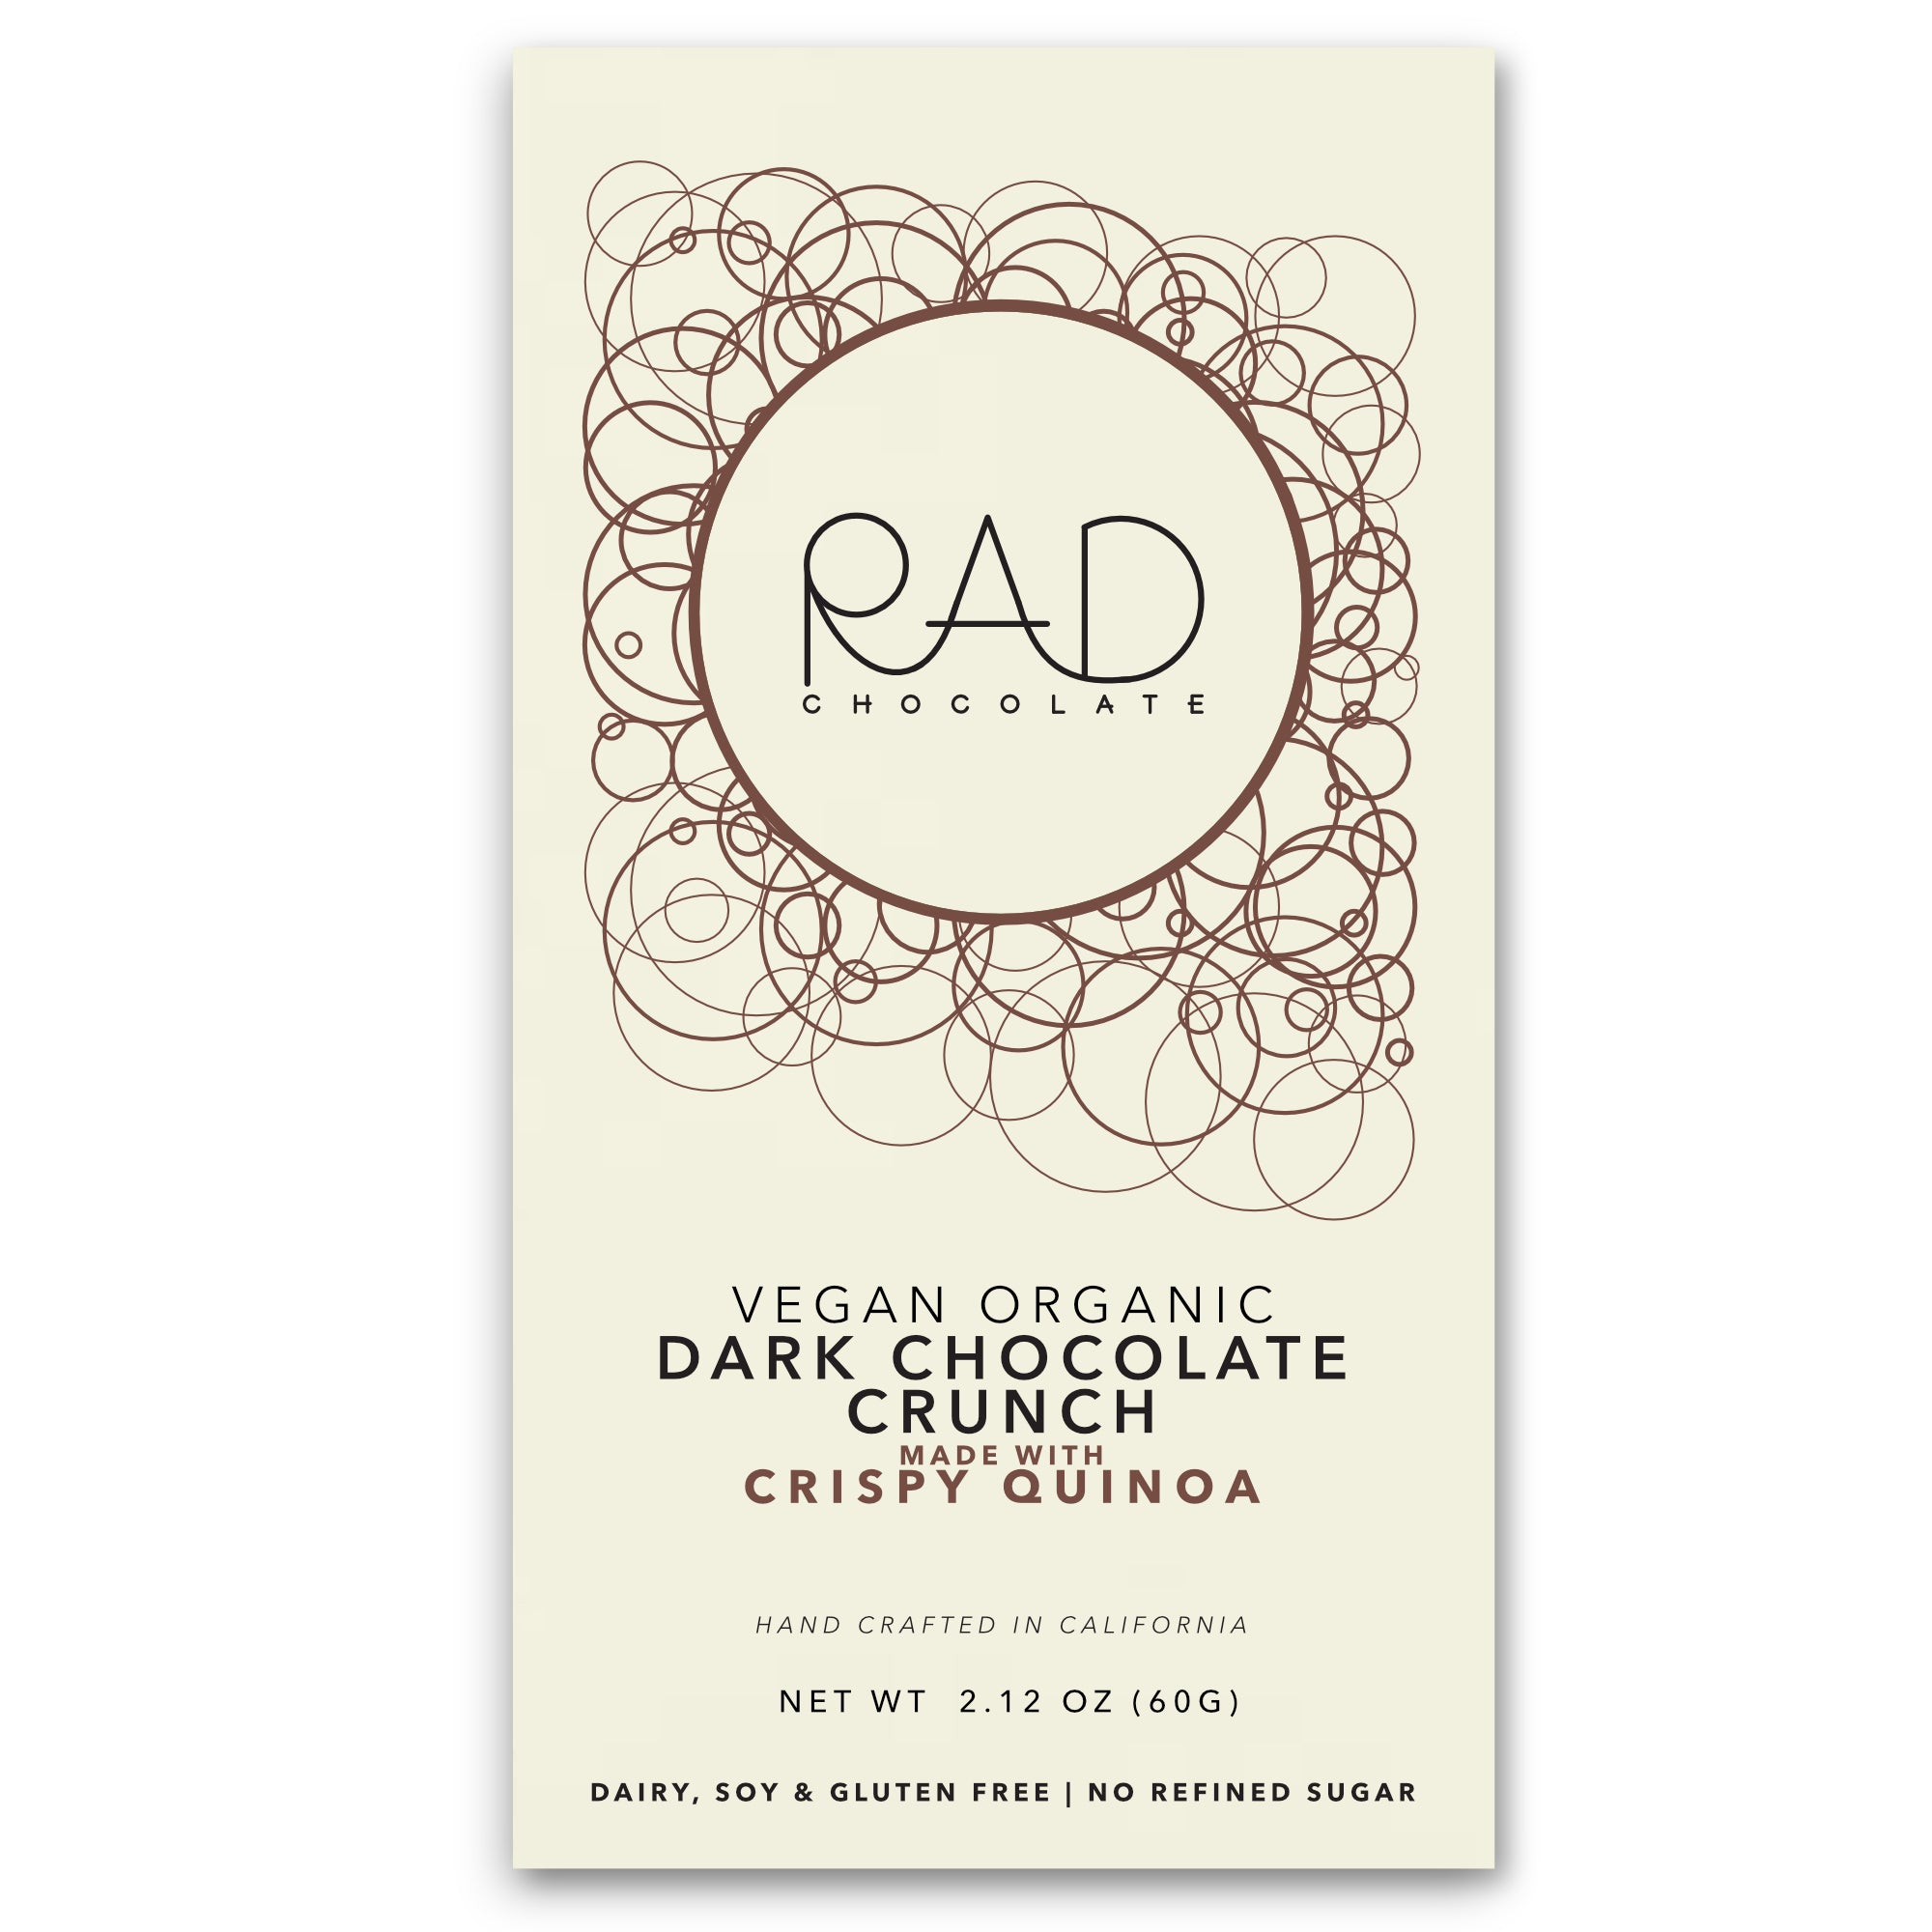 Pure Dark Chocolate with Coconut Sugar & Crispy Quinoa